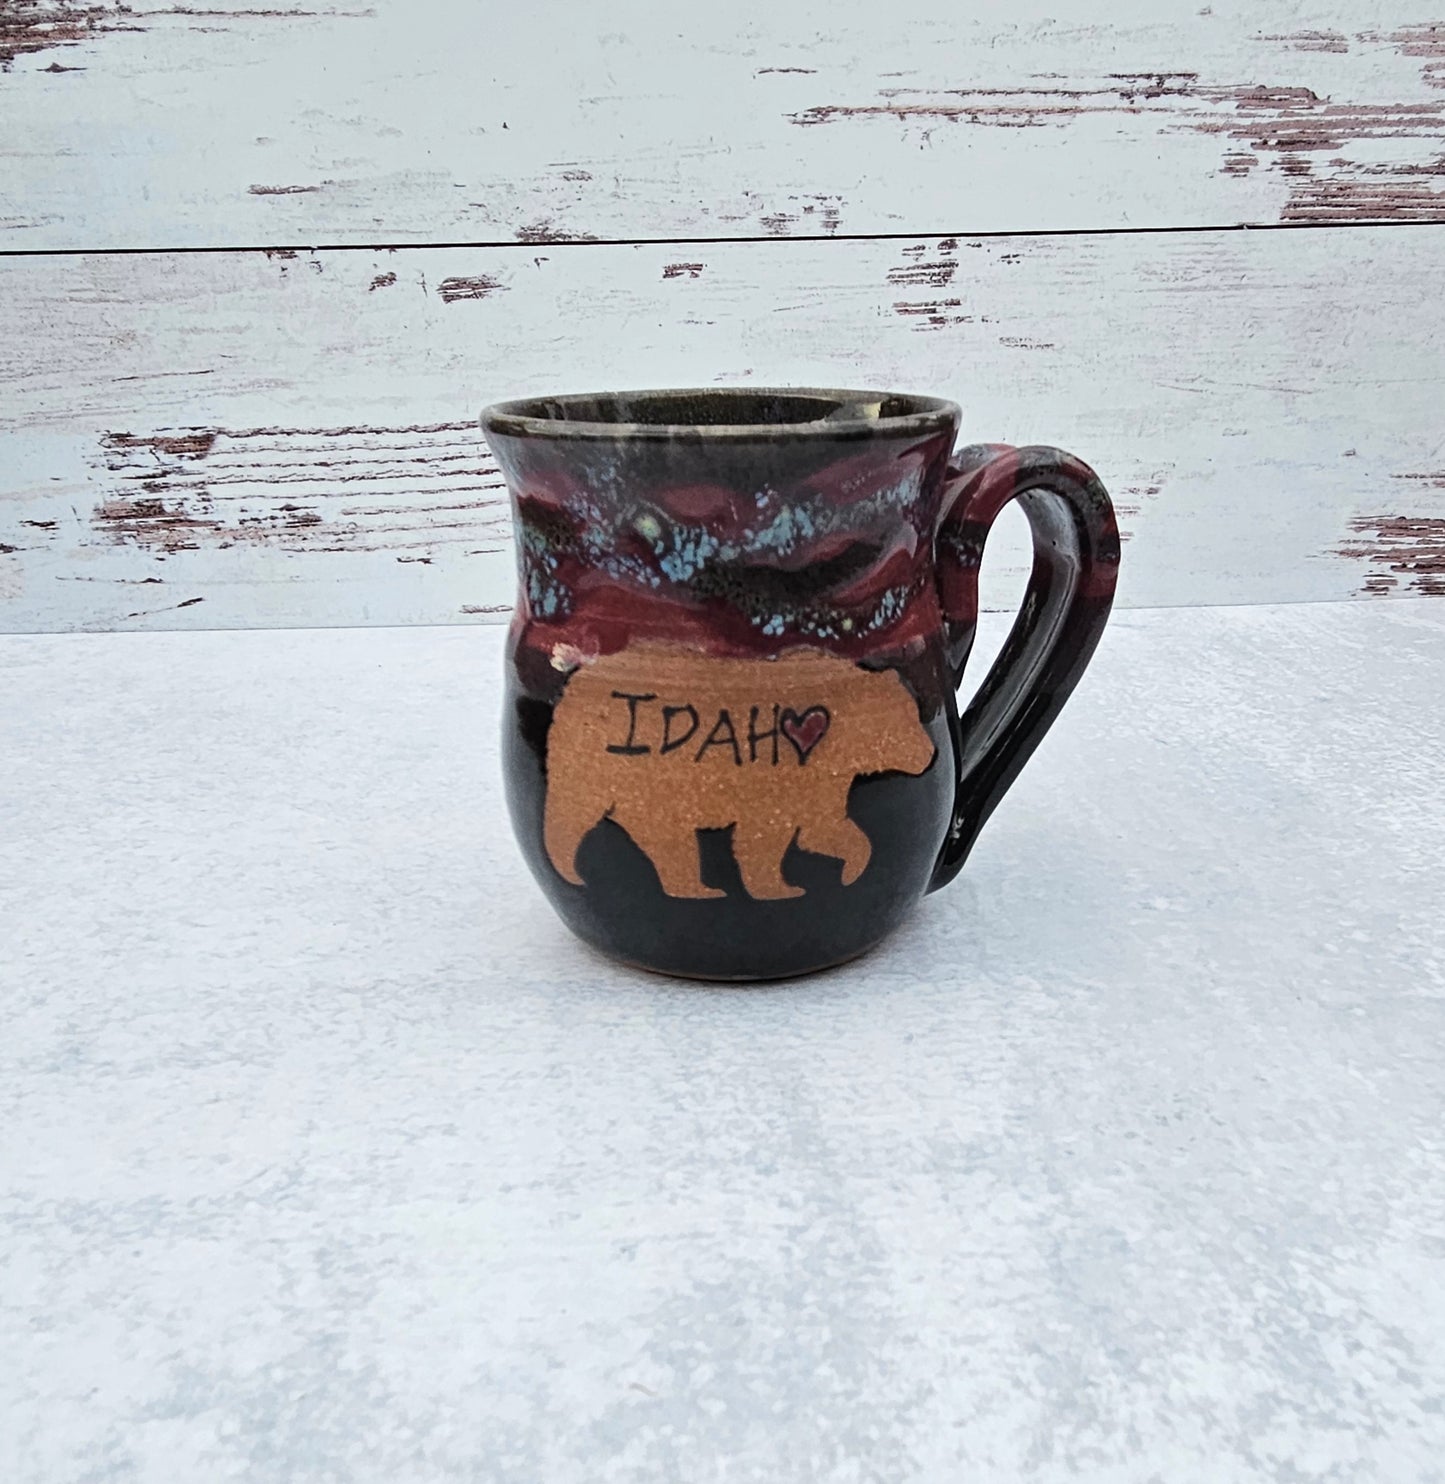 Idaho Bear Mug 》Burgundy